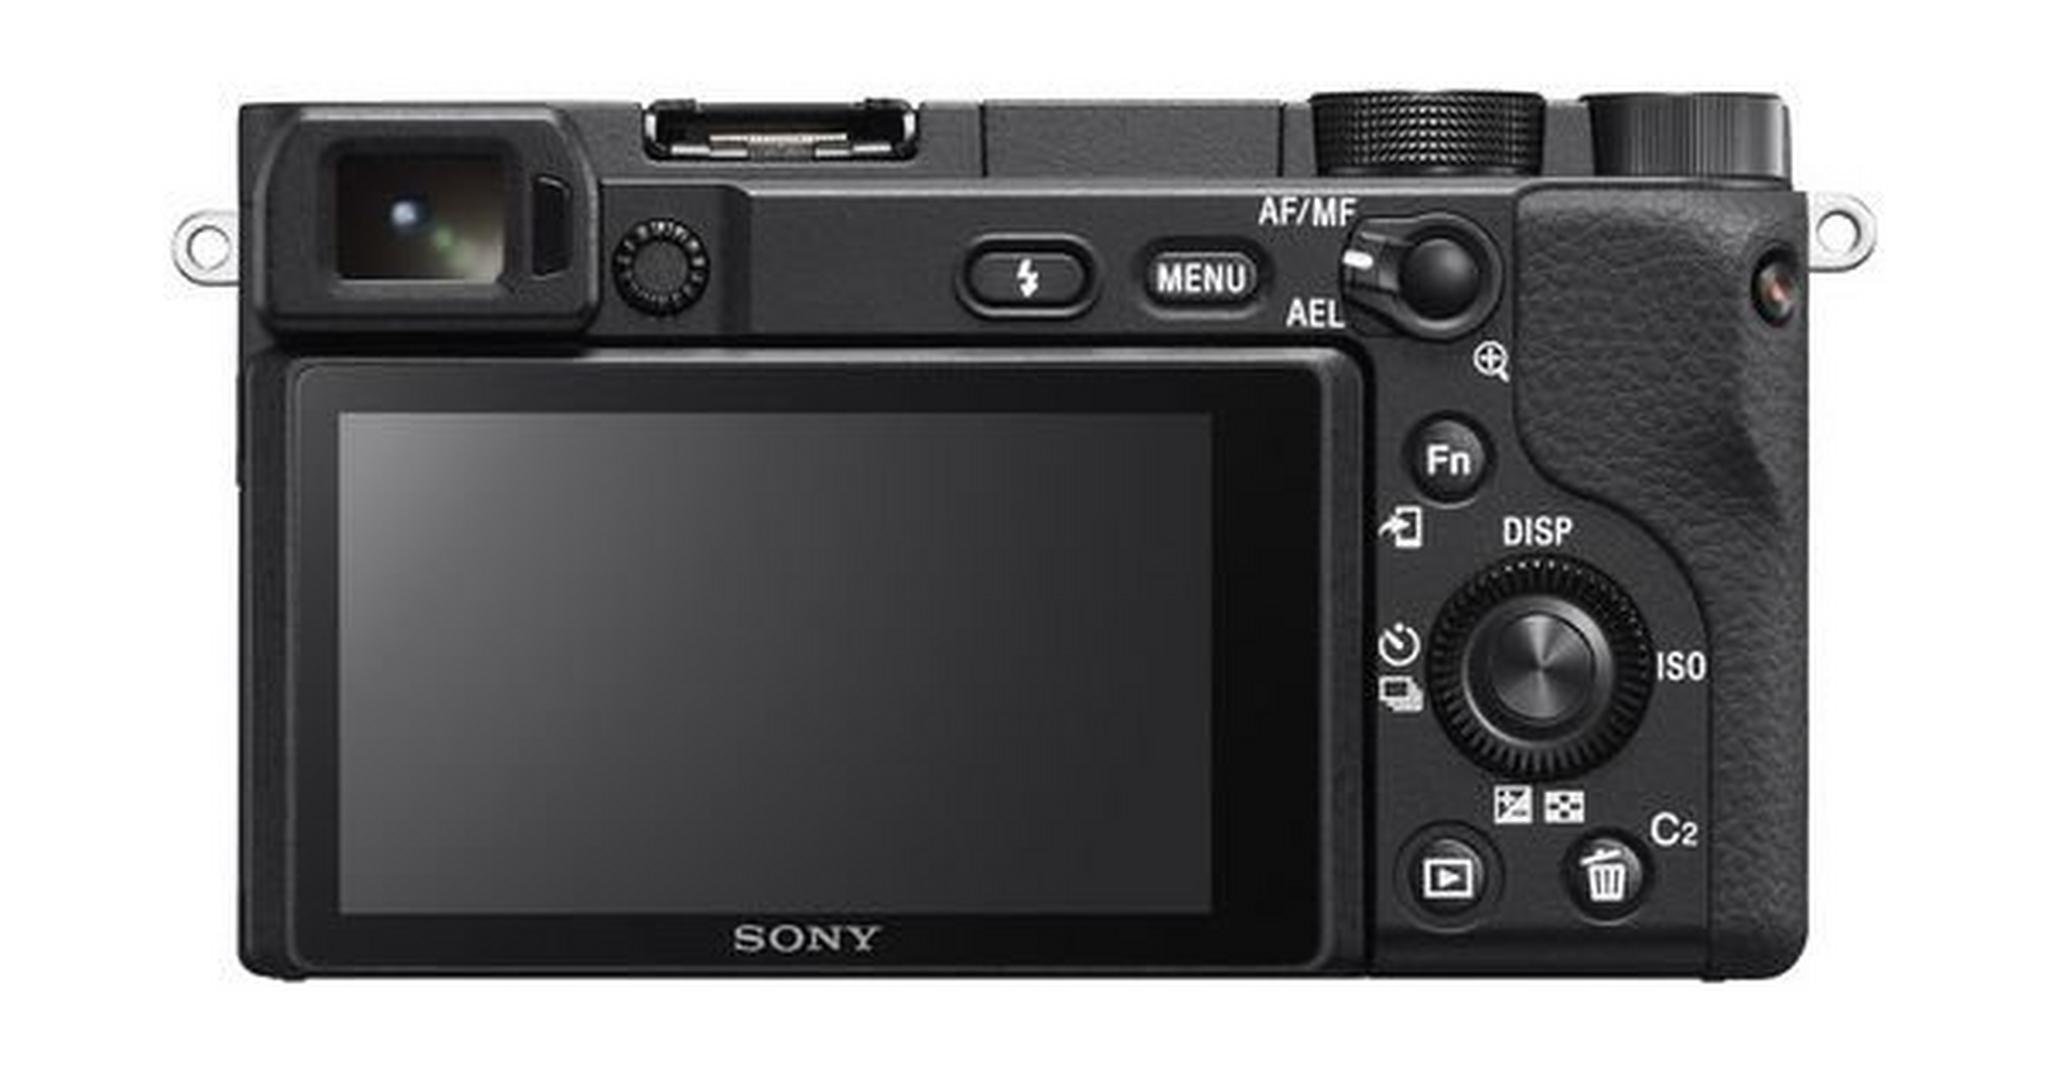 كاميرا سوني A6400 بدقة ٢٤,٢ ميجابكسل بدون مرآة وعدسة ١٦ - ٥٠ ملم